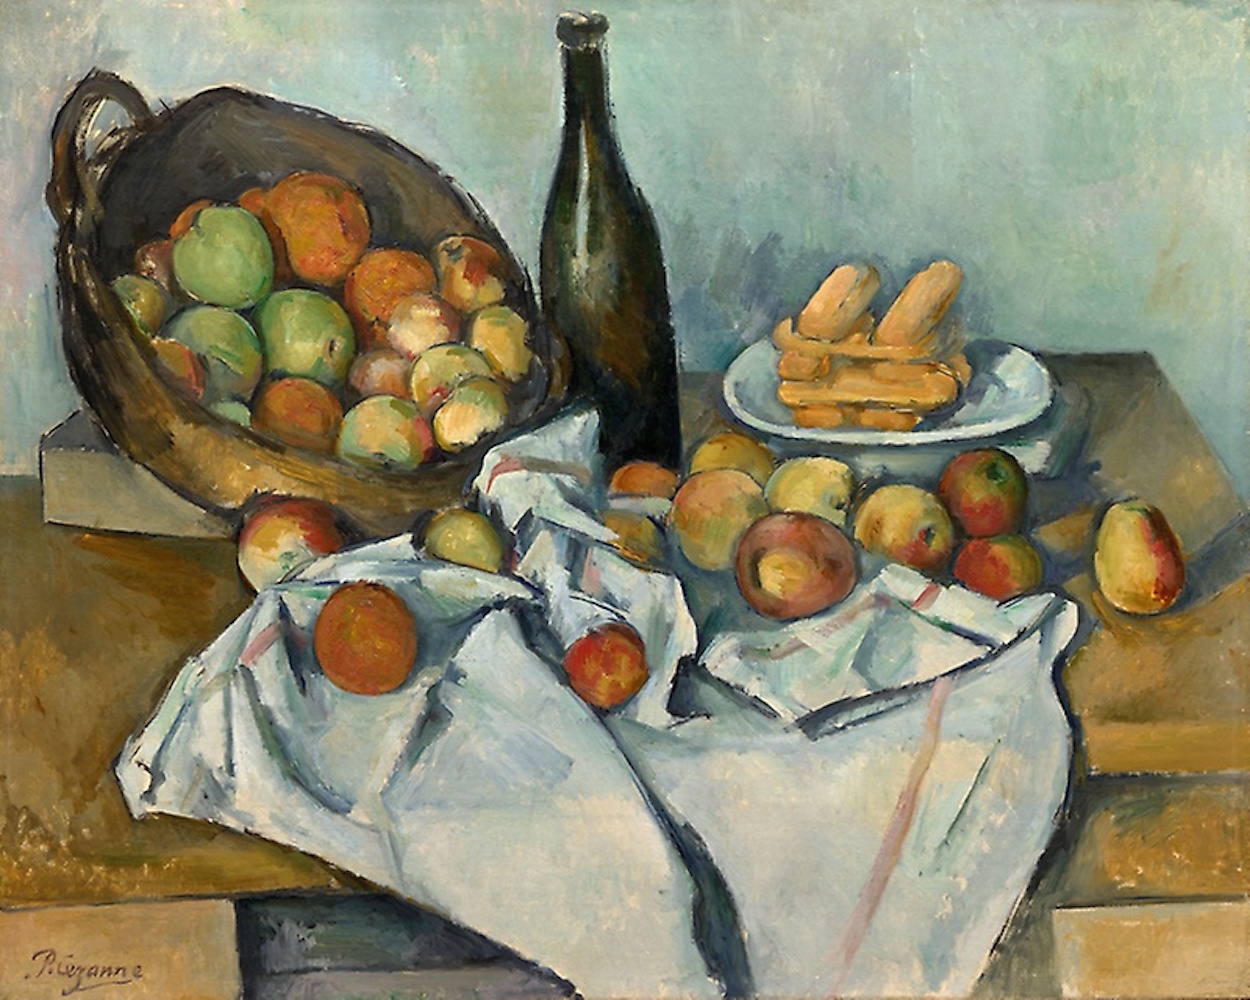 Coșul cu mere by Paul Cézanne - aprox. 1893 - 65 x 80 cm 